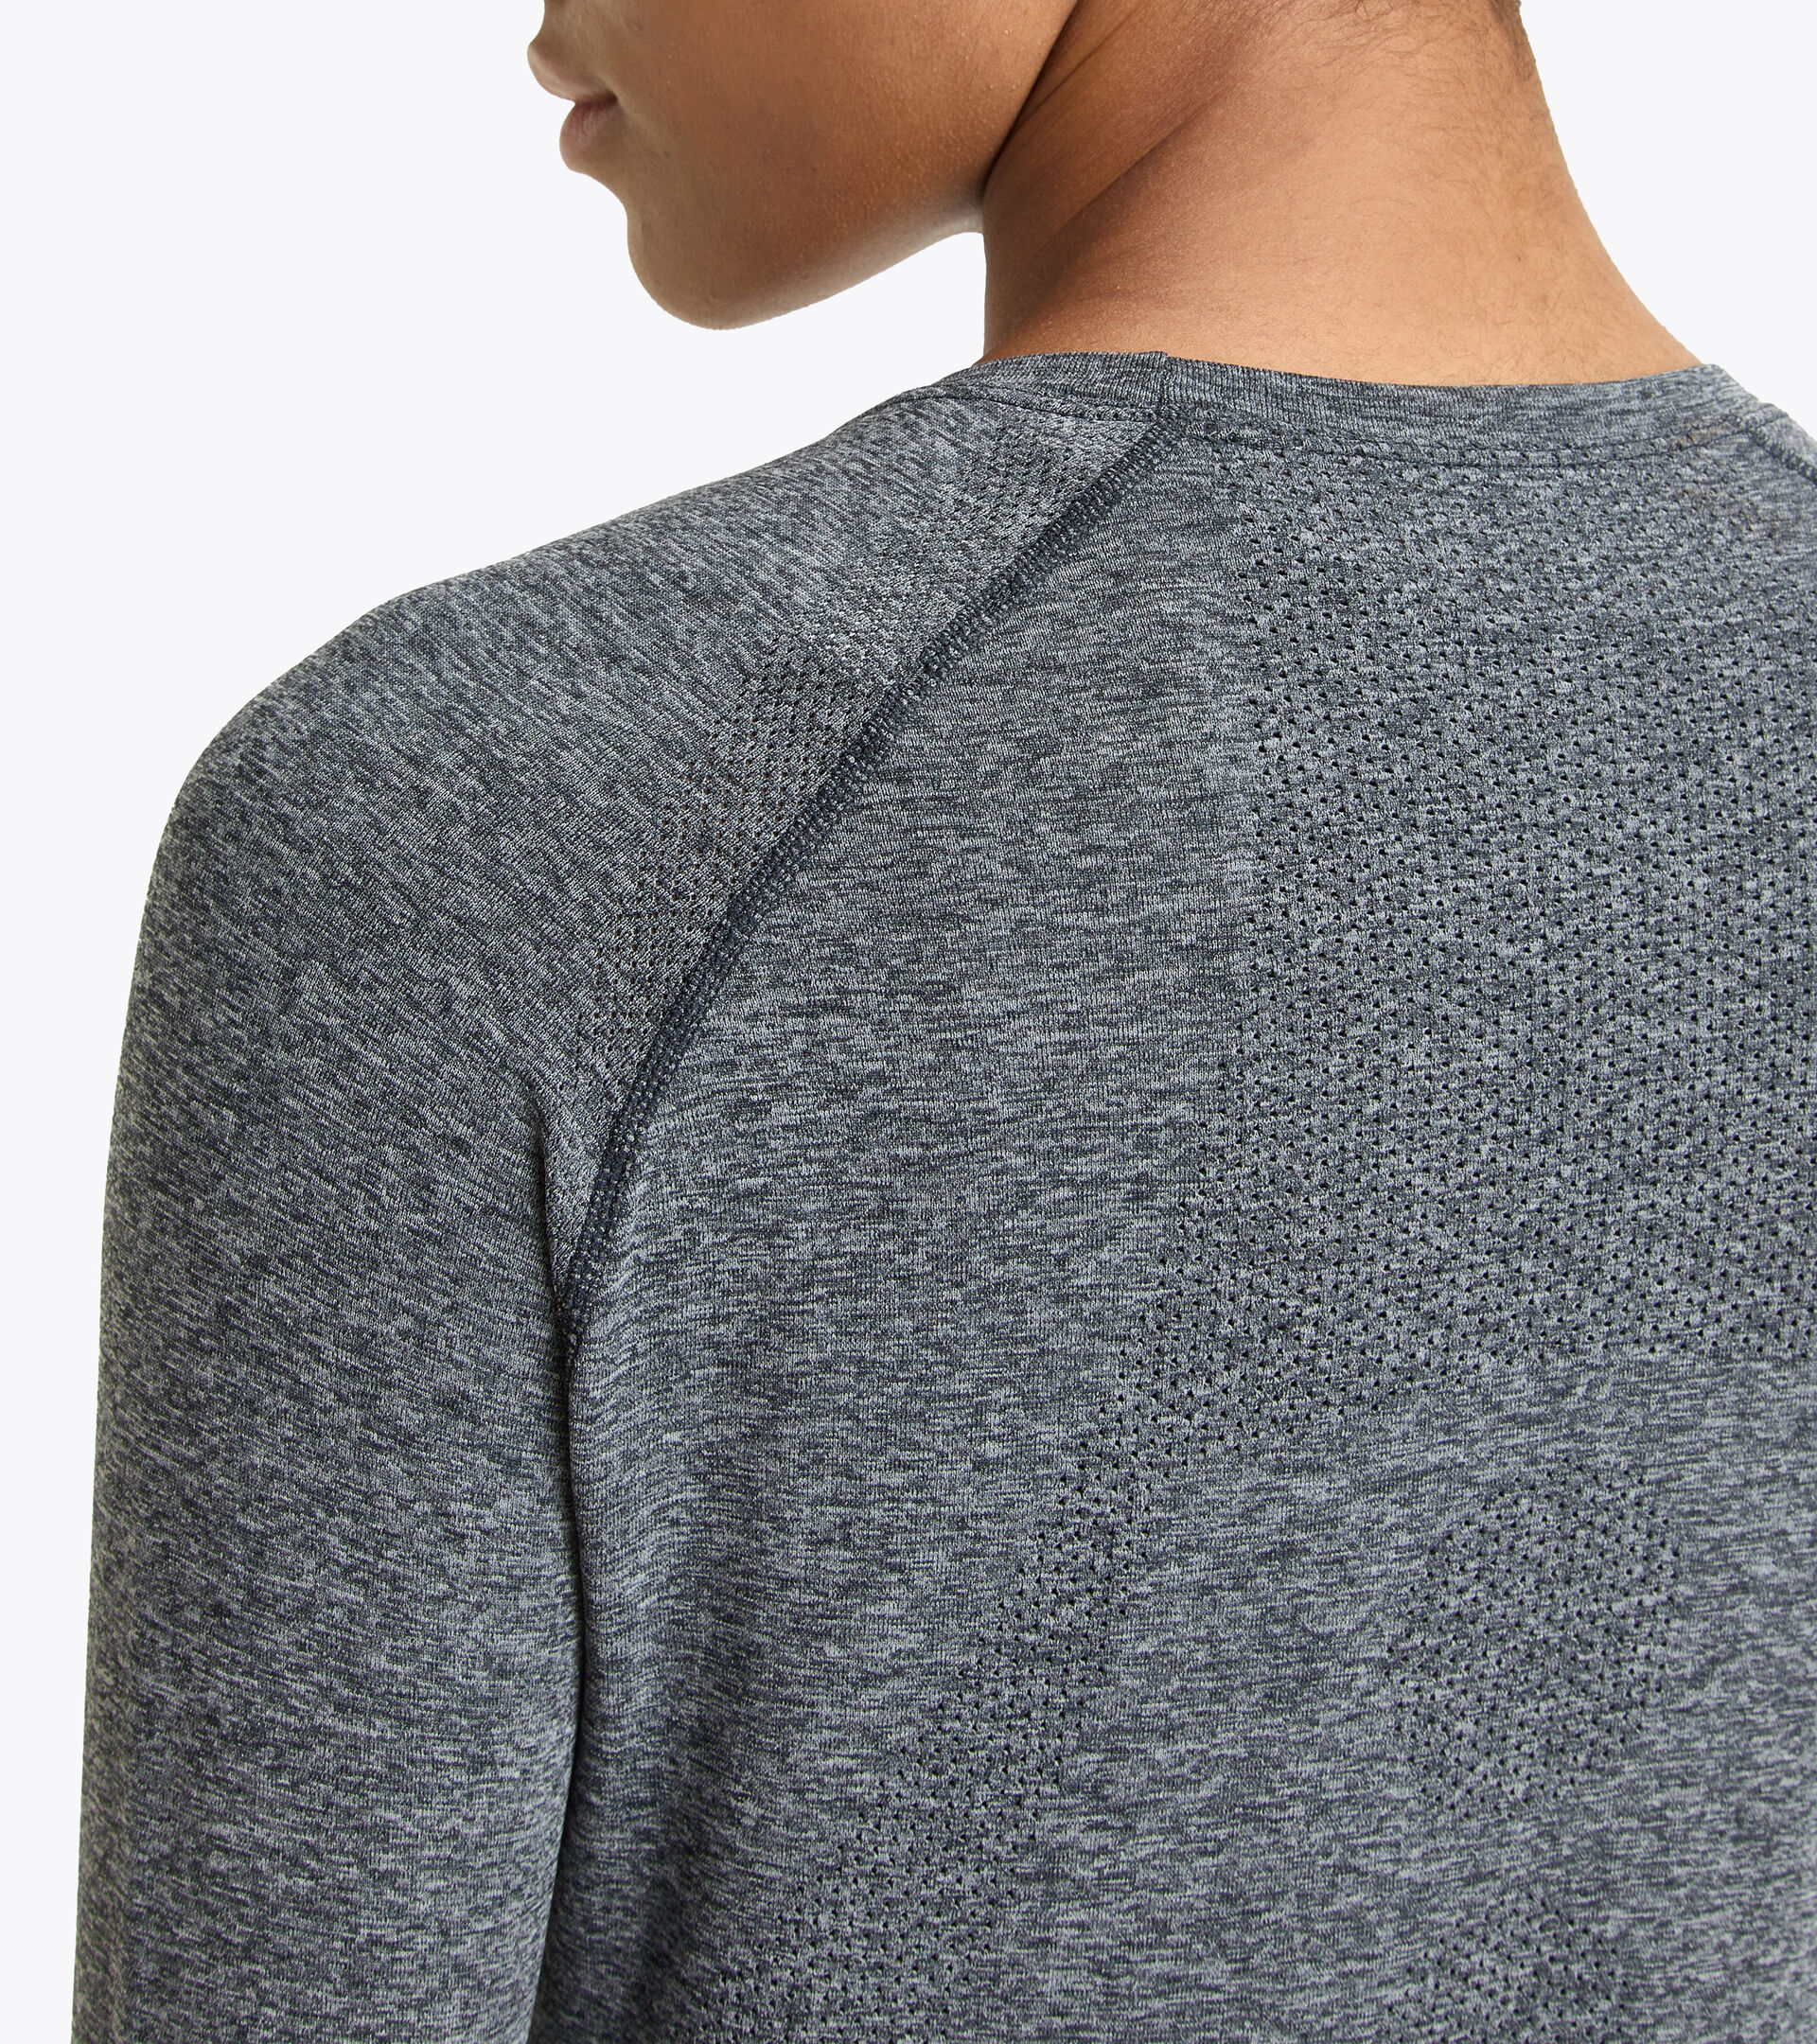 L. LS T-SHIRT SKIN FRIENDLY Long-sleeved thermal shirt - Women - Diadora  Online Store DK